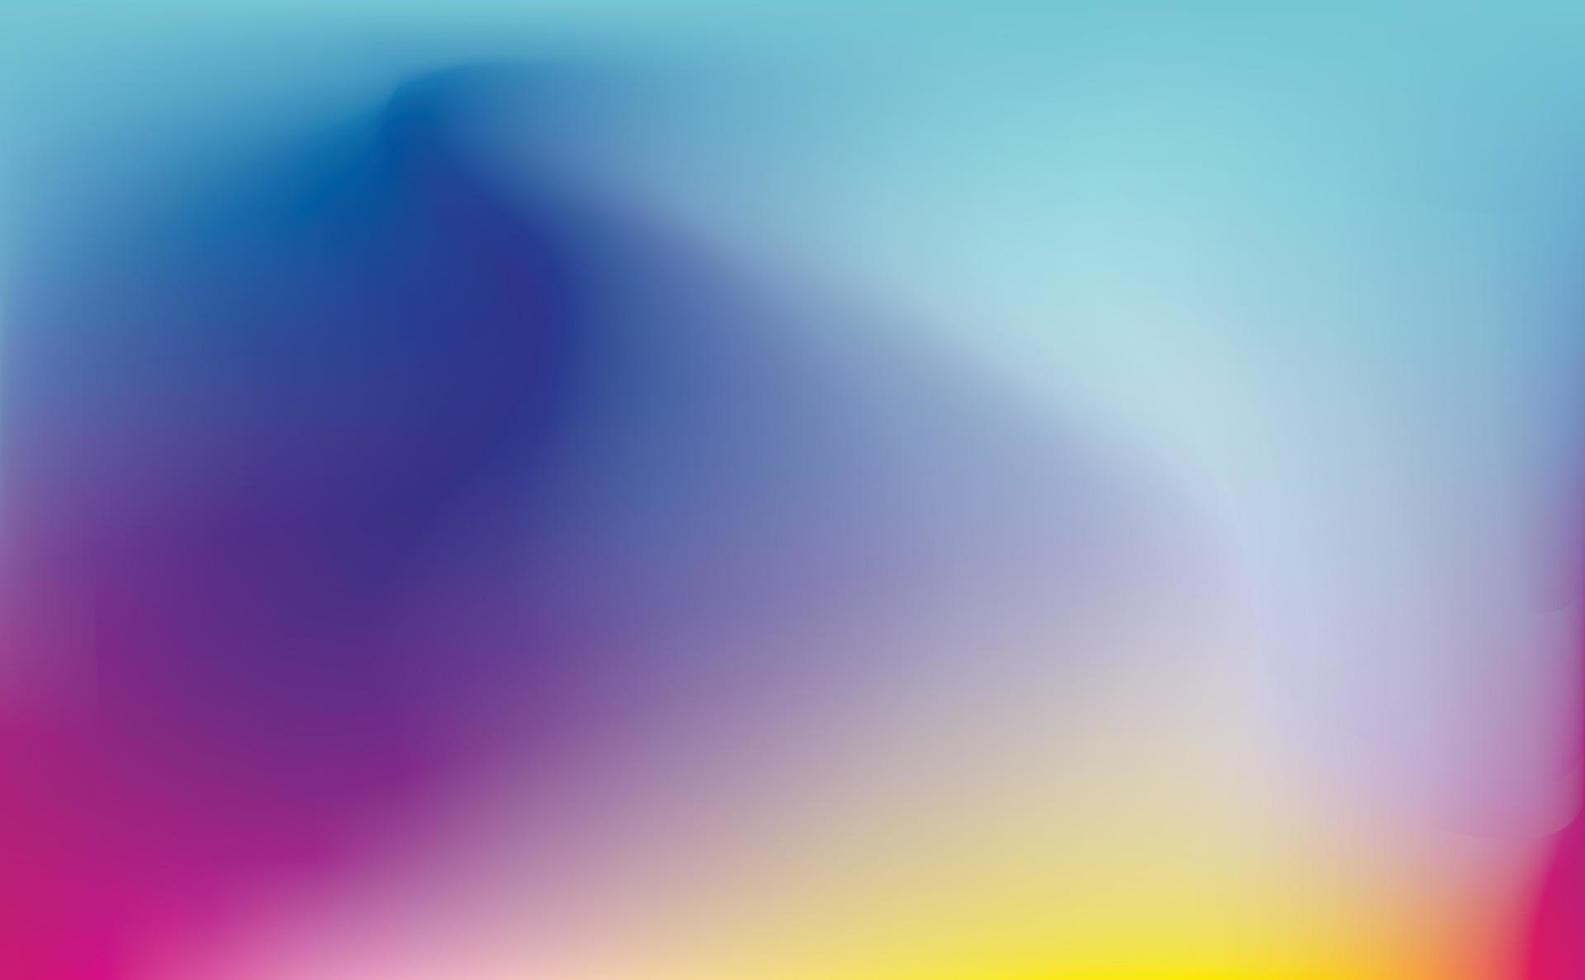 fundo gradiente abstrato com uma combinação de cores azul, amarelo, rosa, roxo e vermelho na forma de um padrão de onda. Aurora boreal. copie o espaço. ilustração vetorial vetor